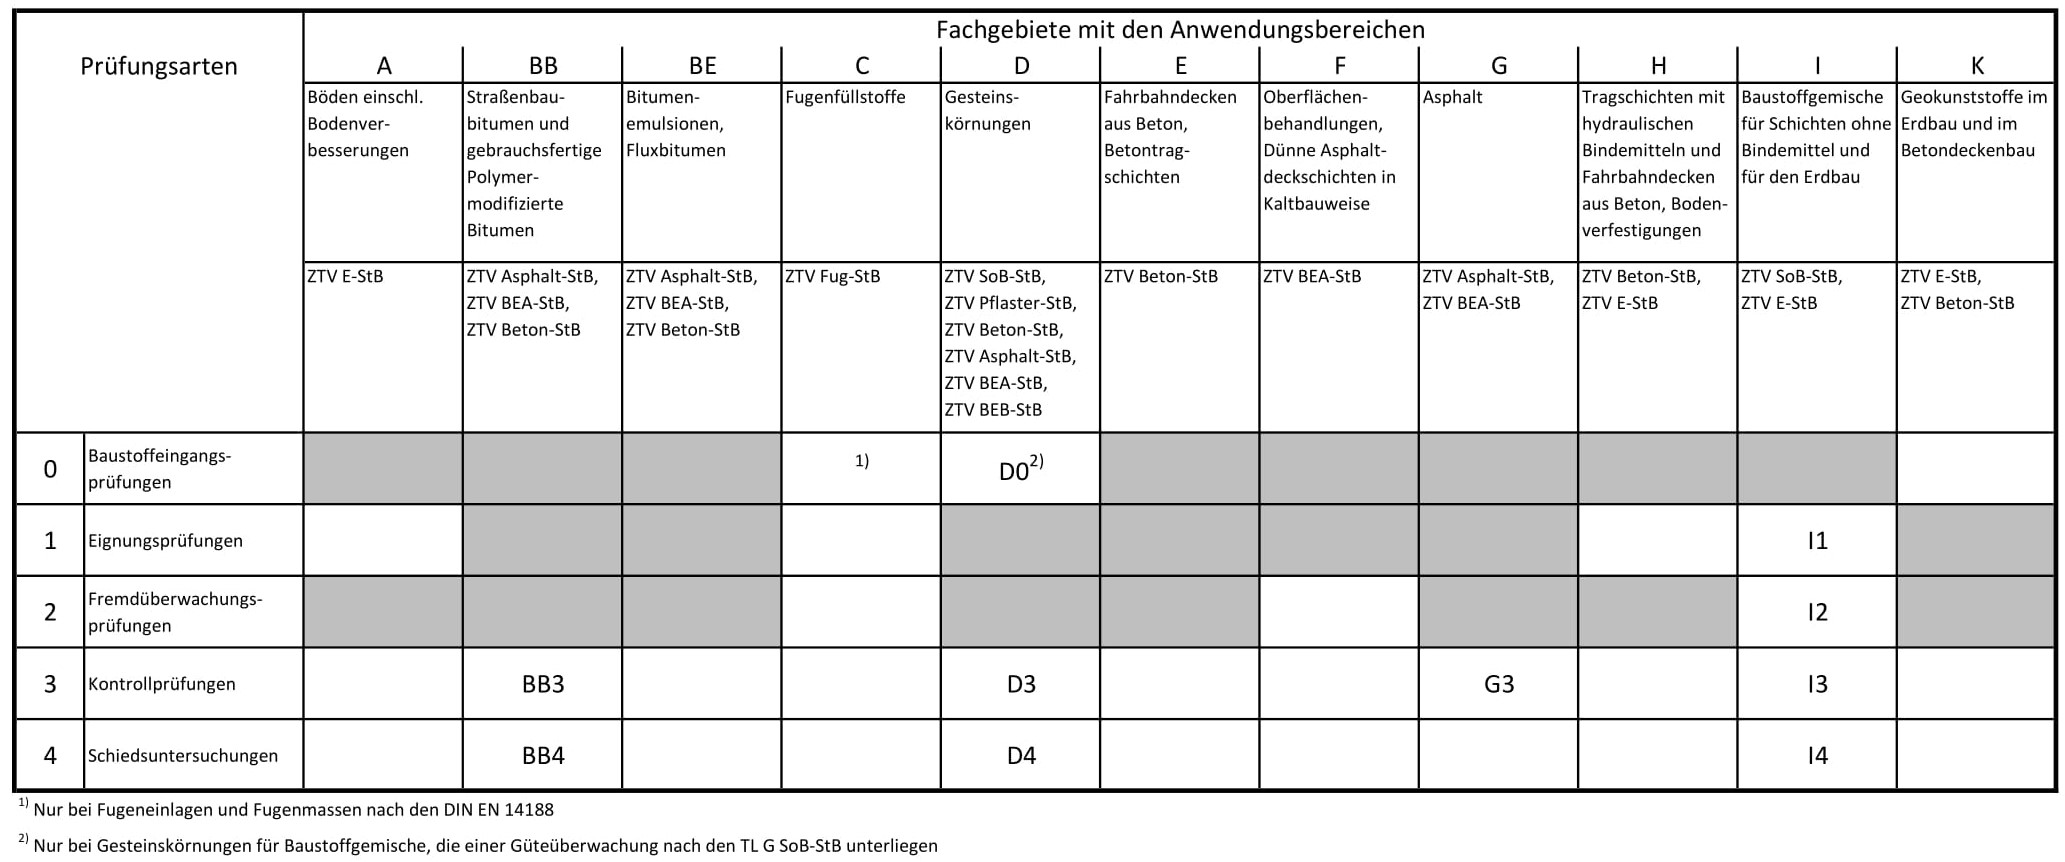 Tabelle Zulassungen nach RAP Stra 2015